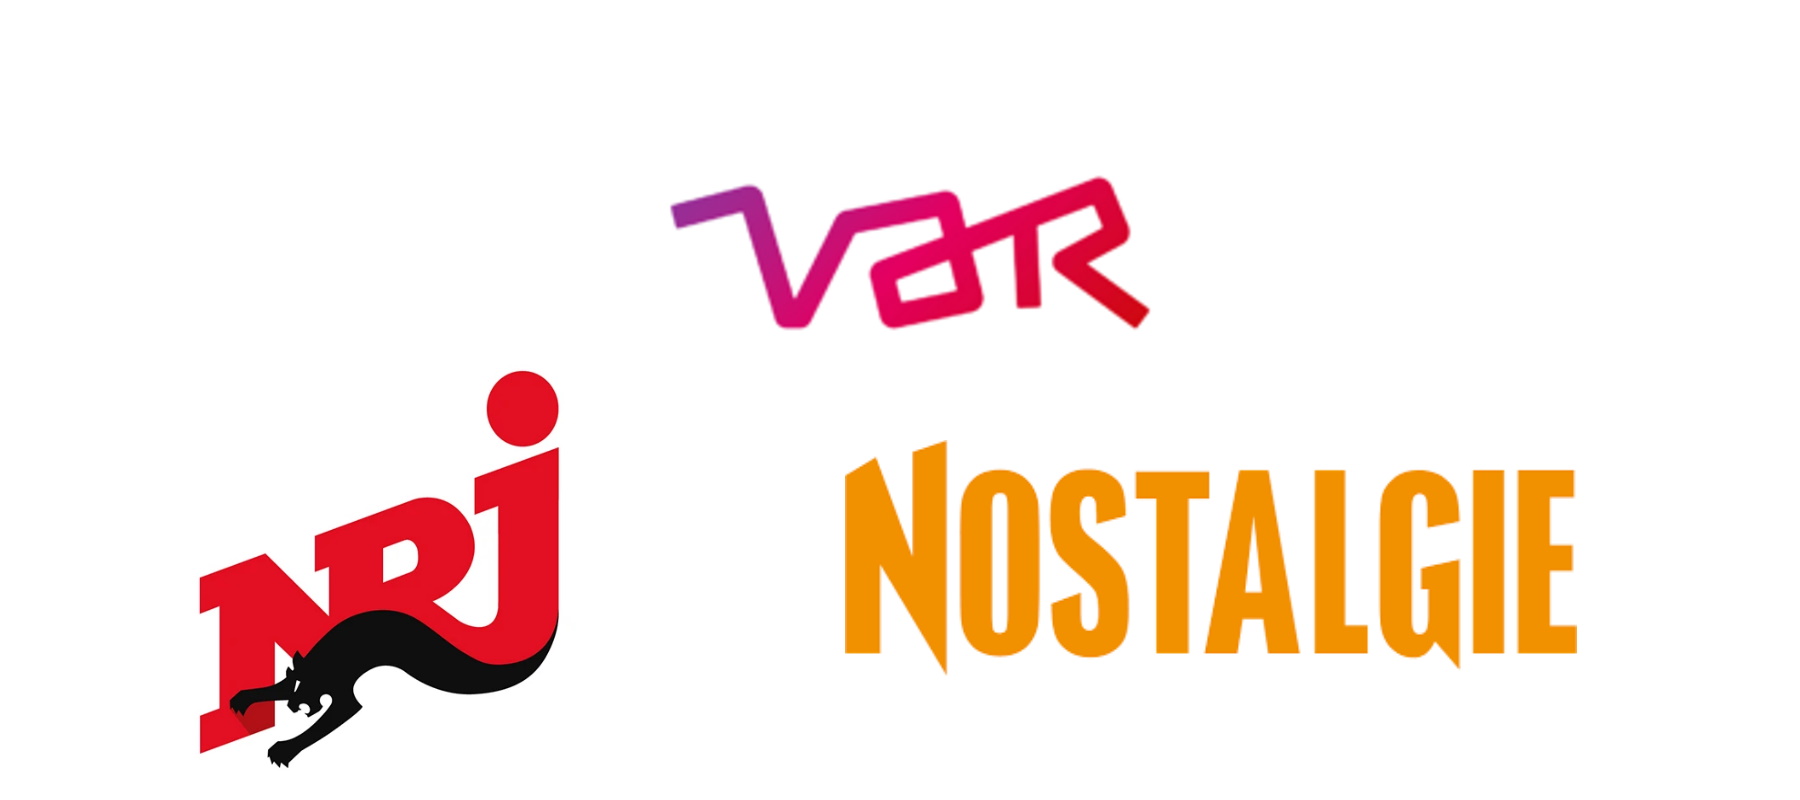 VAR gaat reclame Nostalgie Vlaanderen, NRJ Vlaanderen en Nostalgie+ Vlaanderen verkopen